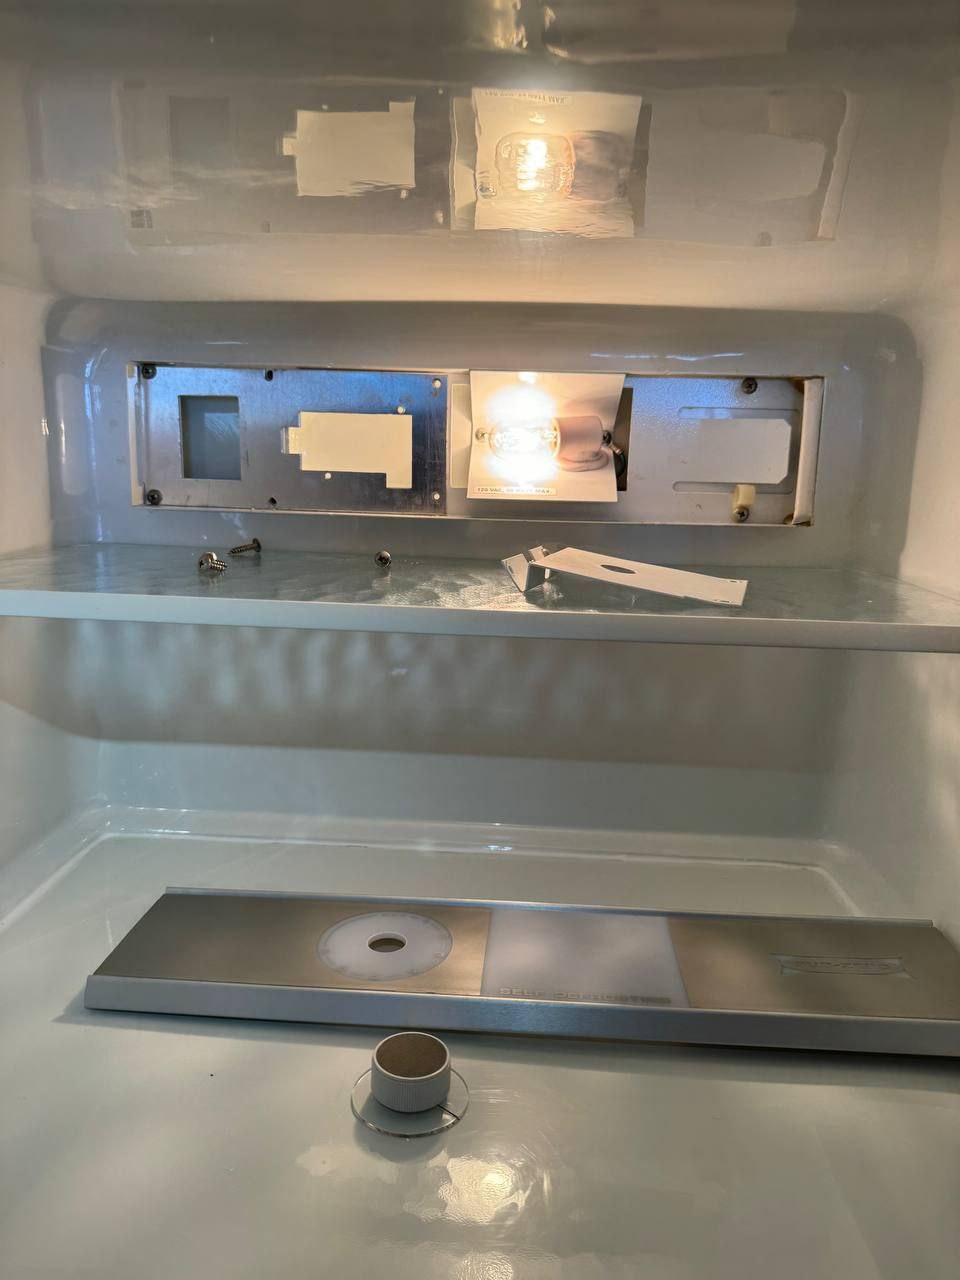 Fridge Sub-Zero Repair in San Diego Refrigerator Repair